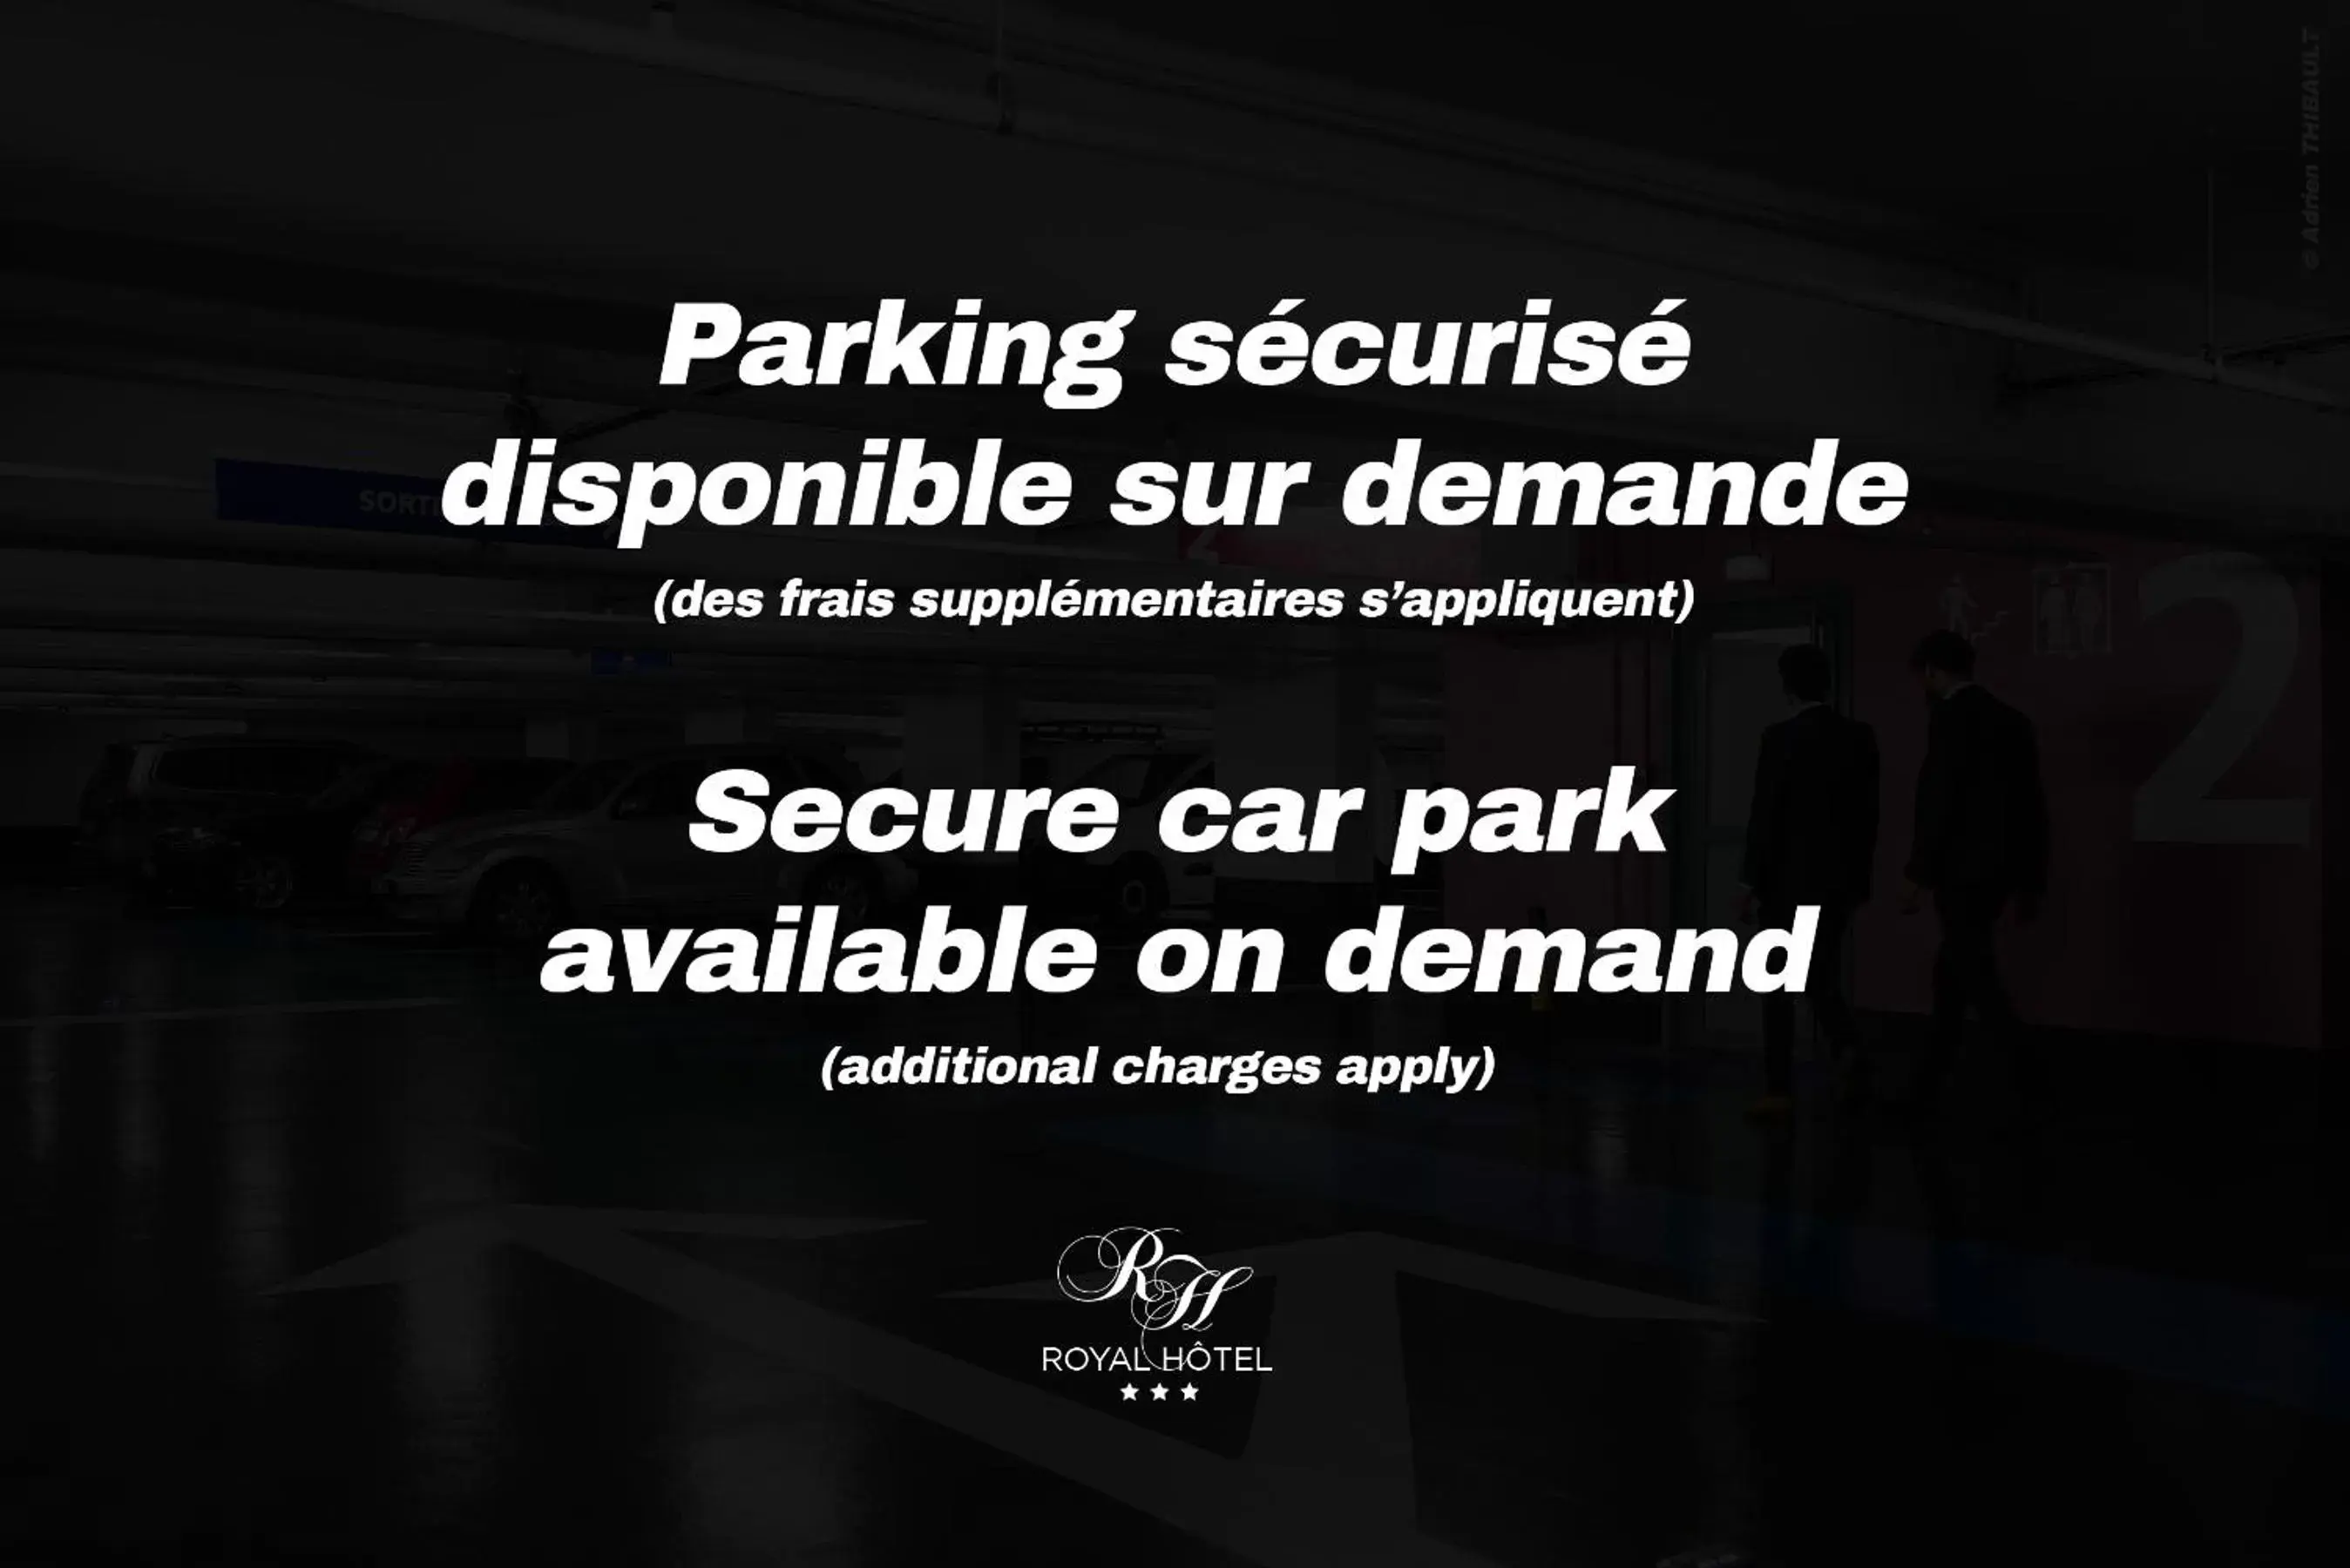 Parking in Royal Hôtel